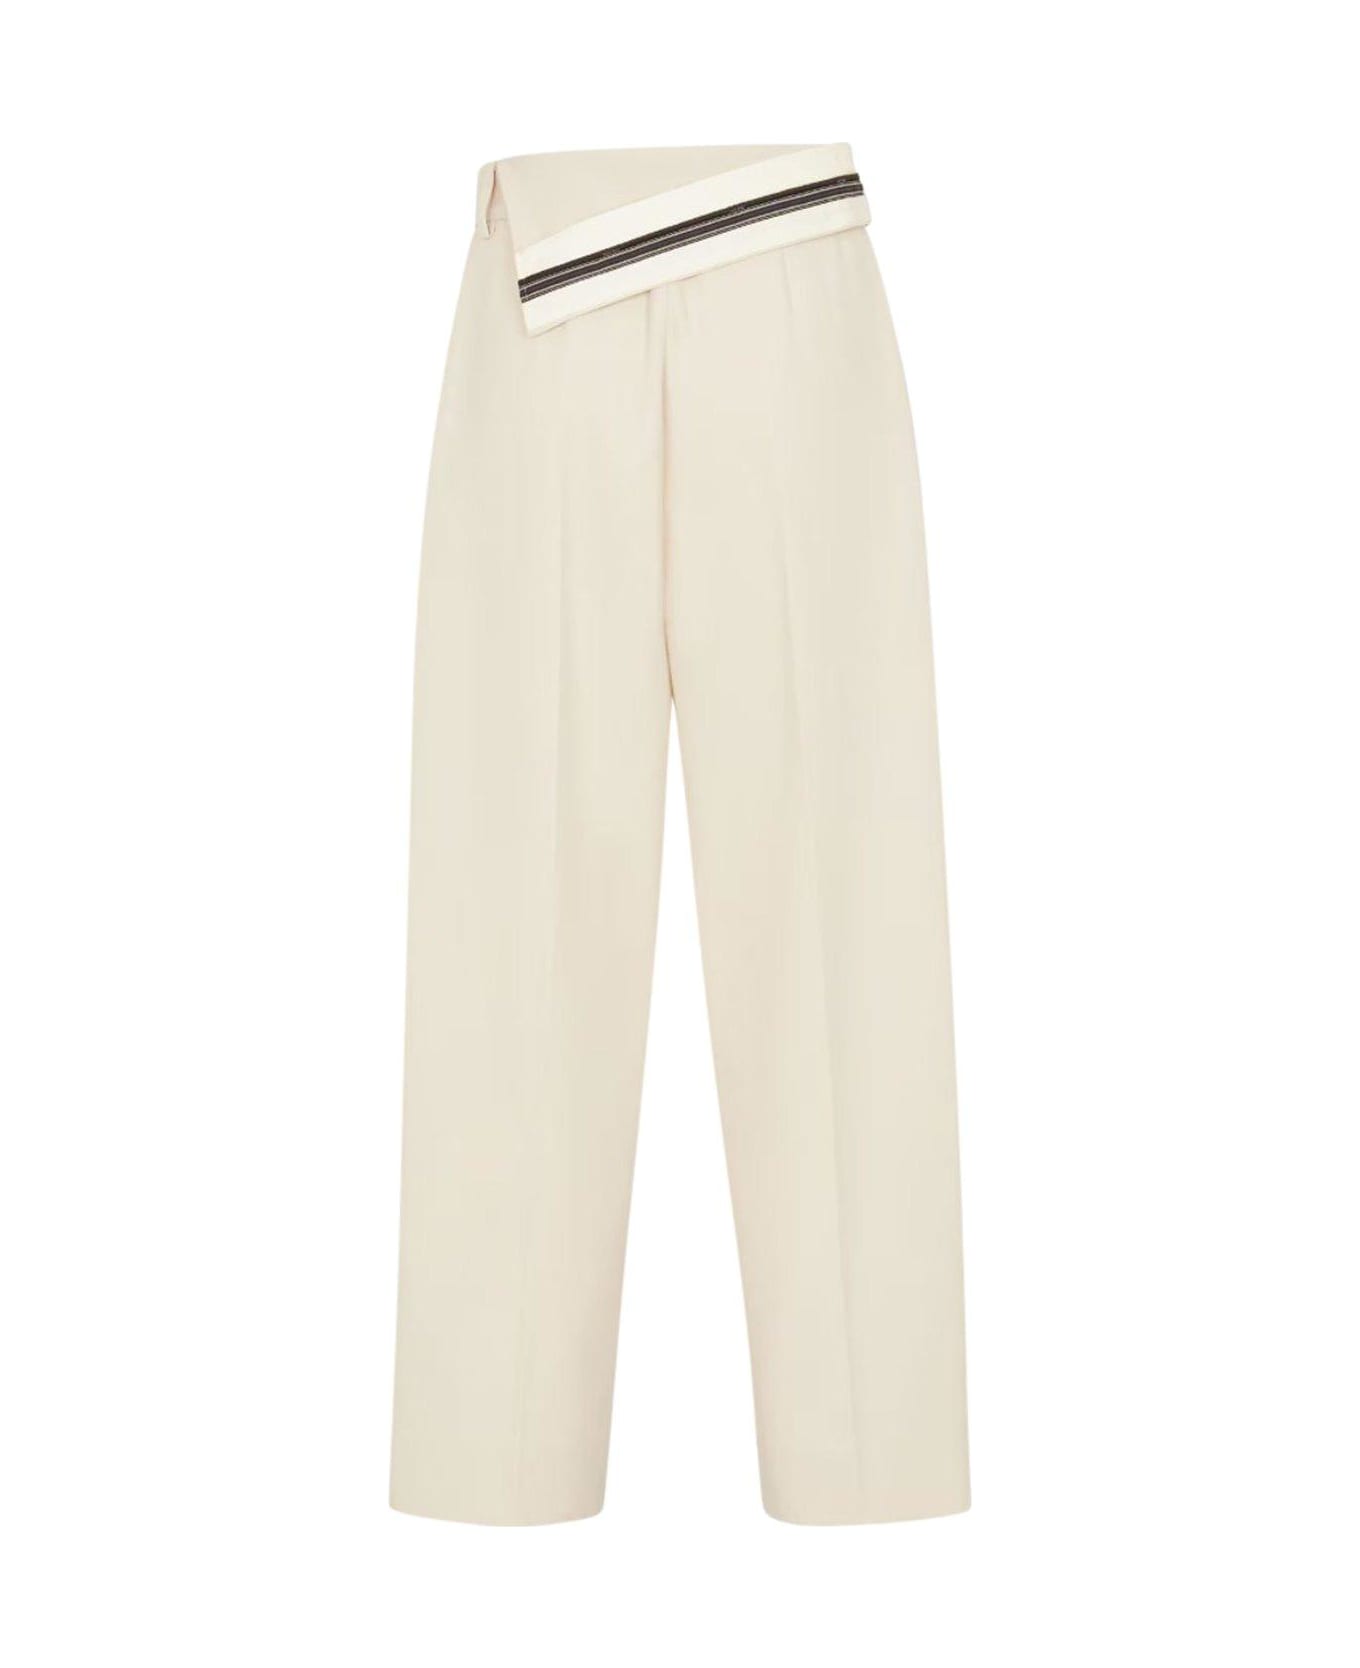 Fendi Pantalone Wool Cotton Trousers - Shell